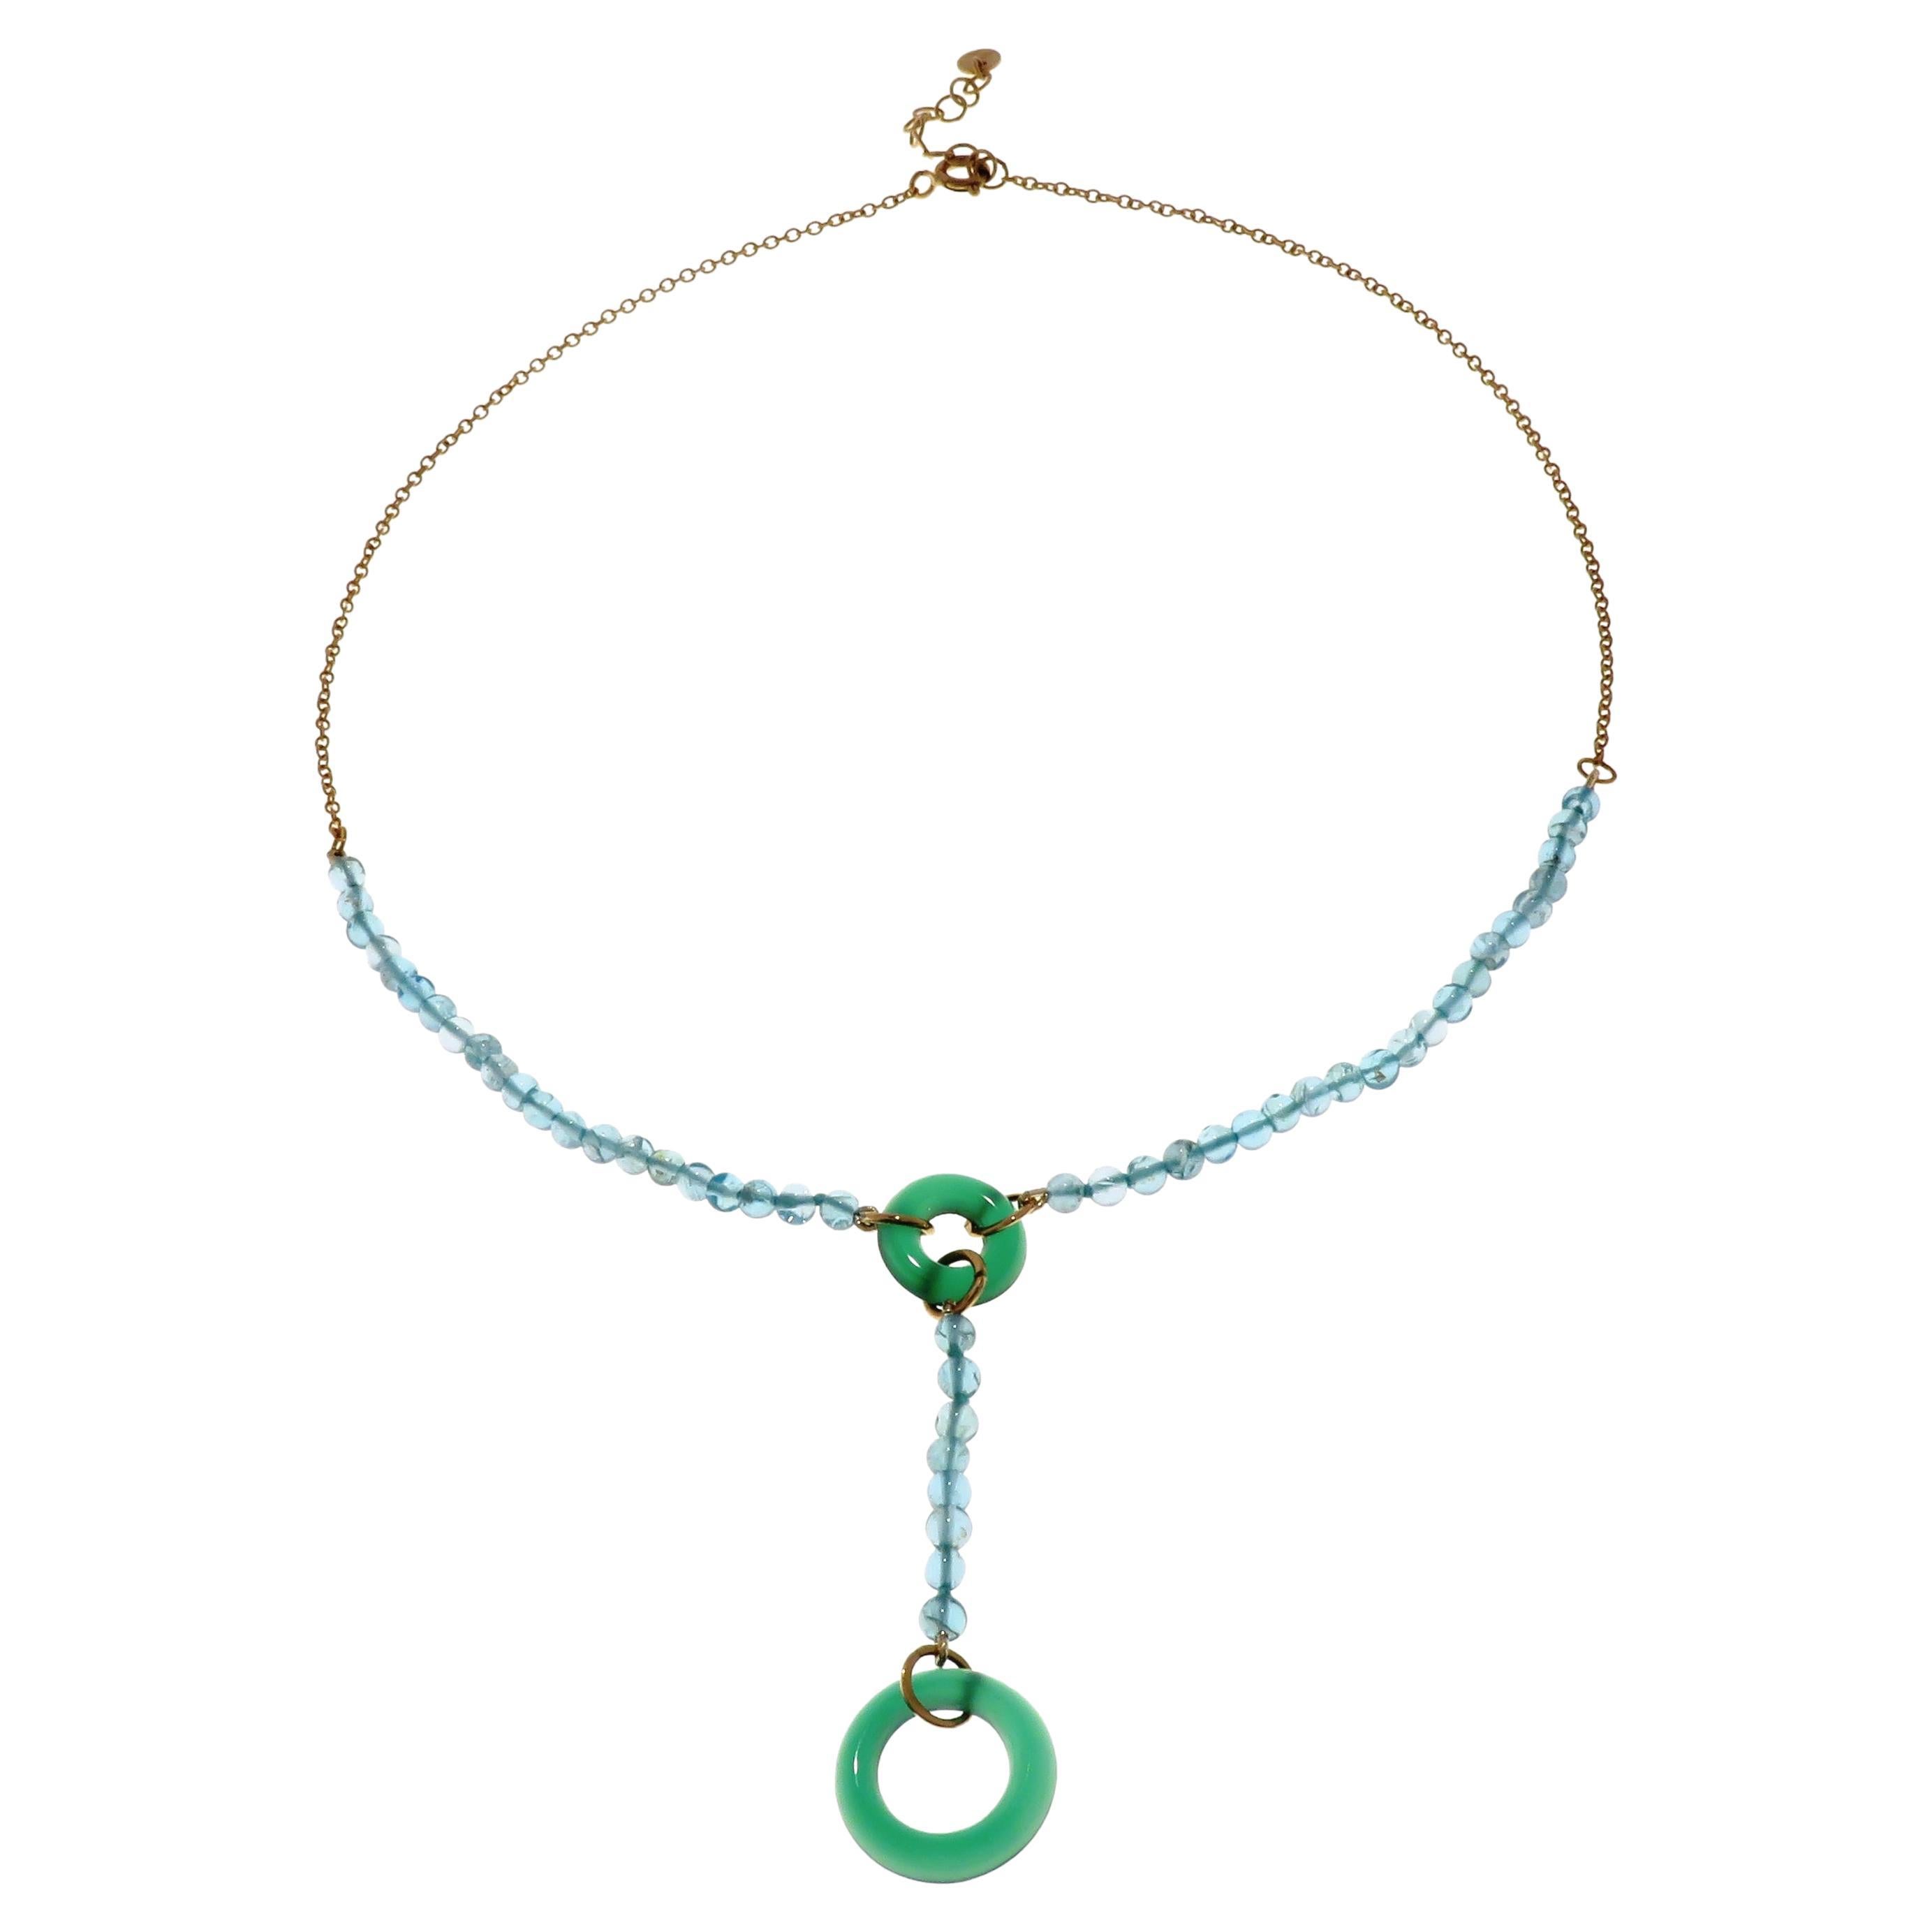 Halskette aus 9 Karat Roségold mit Apatit, grünem Achat, handgefertigt in Italien